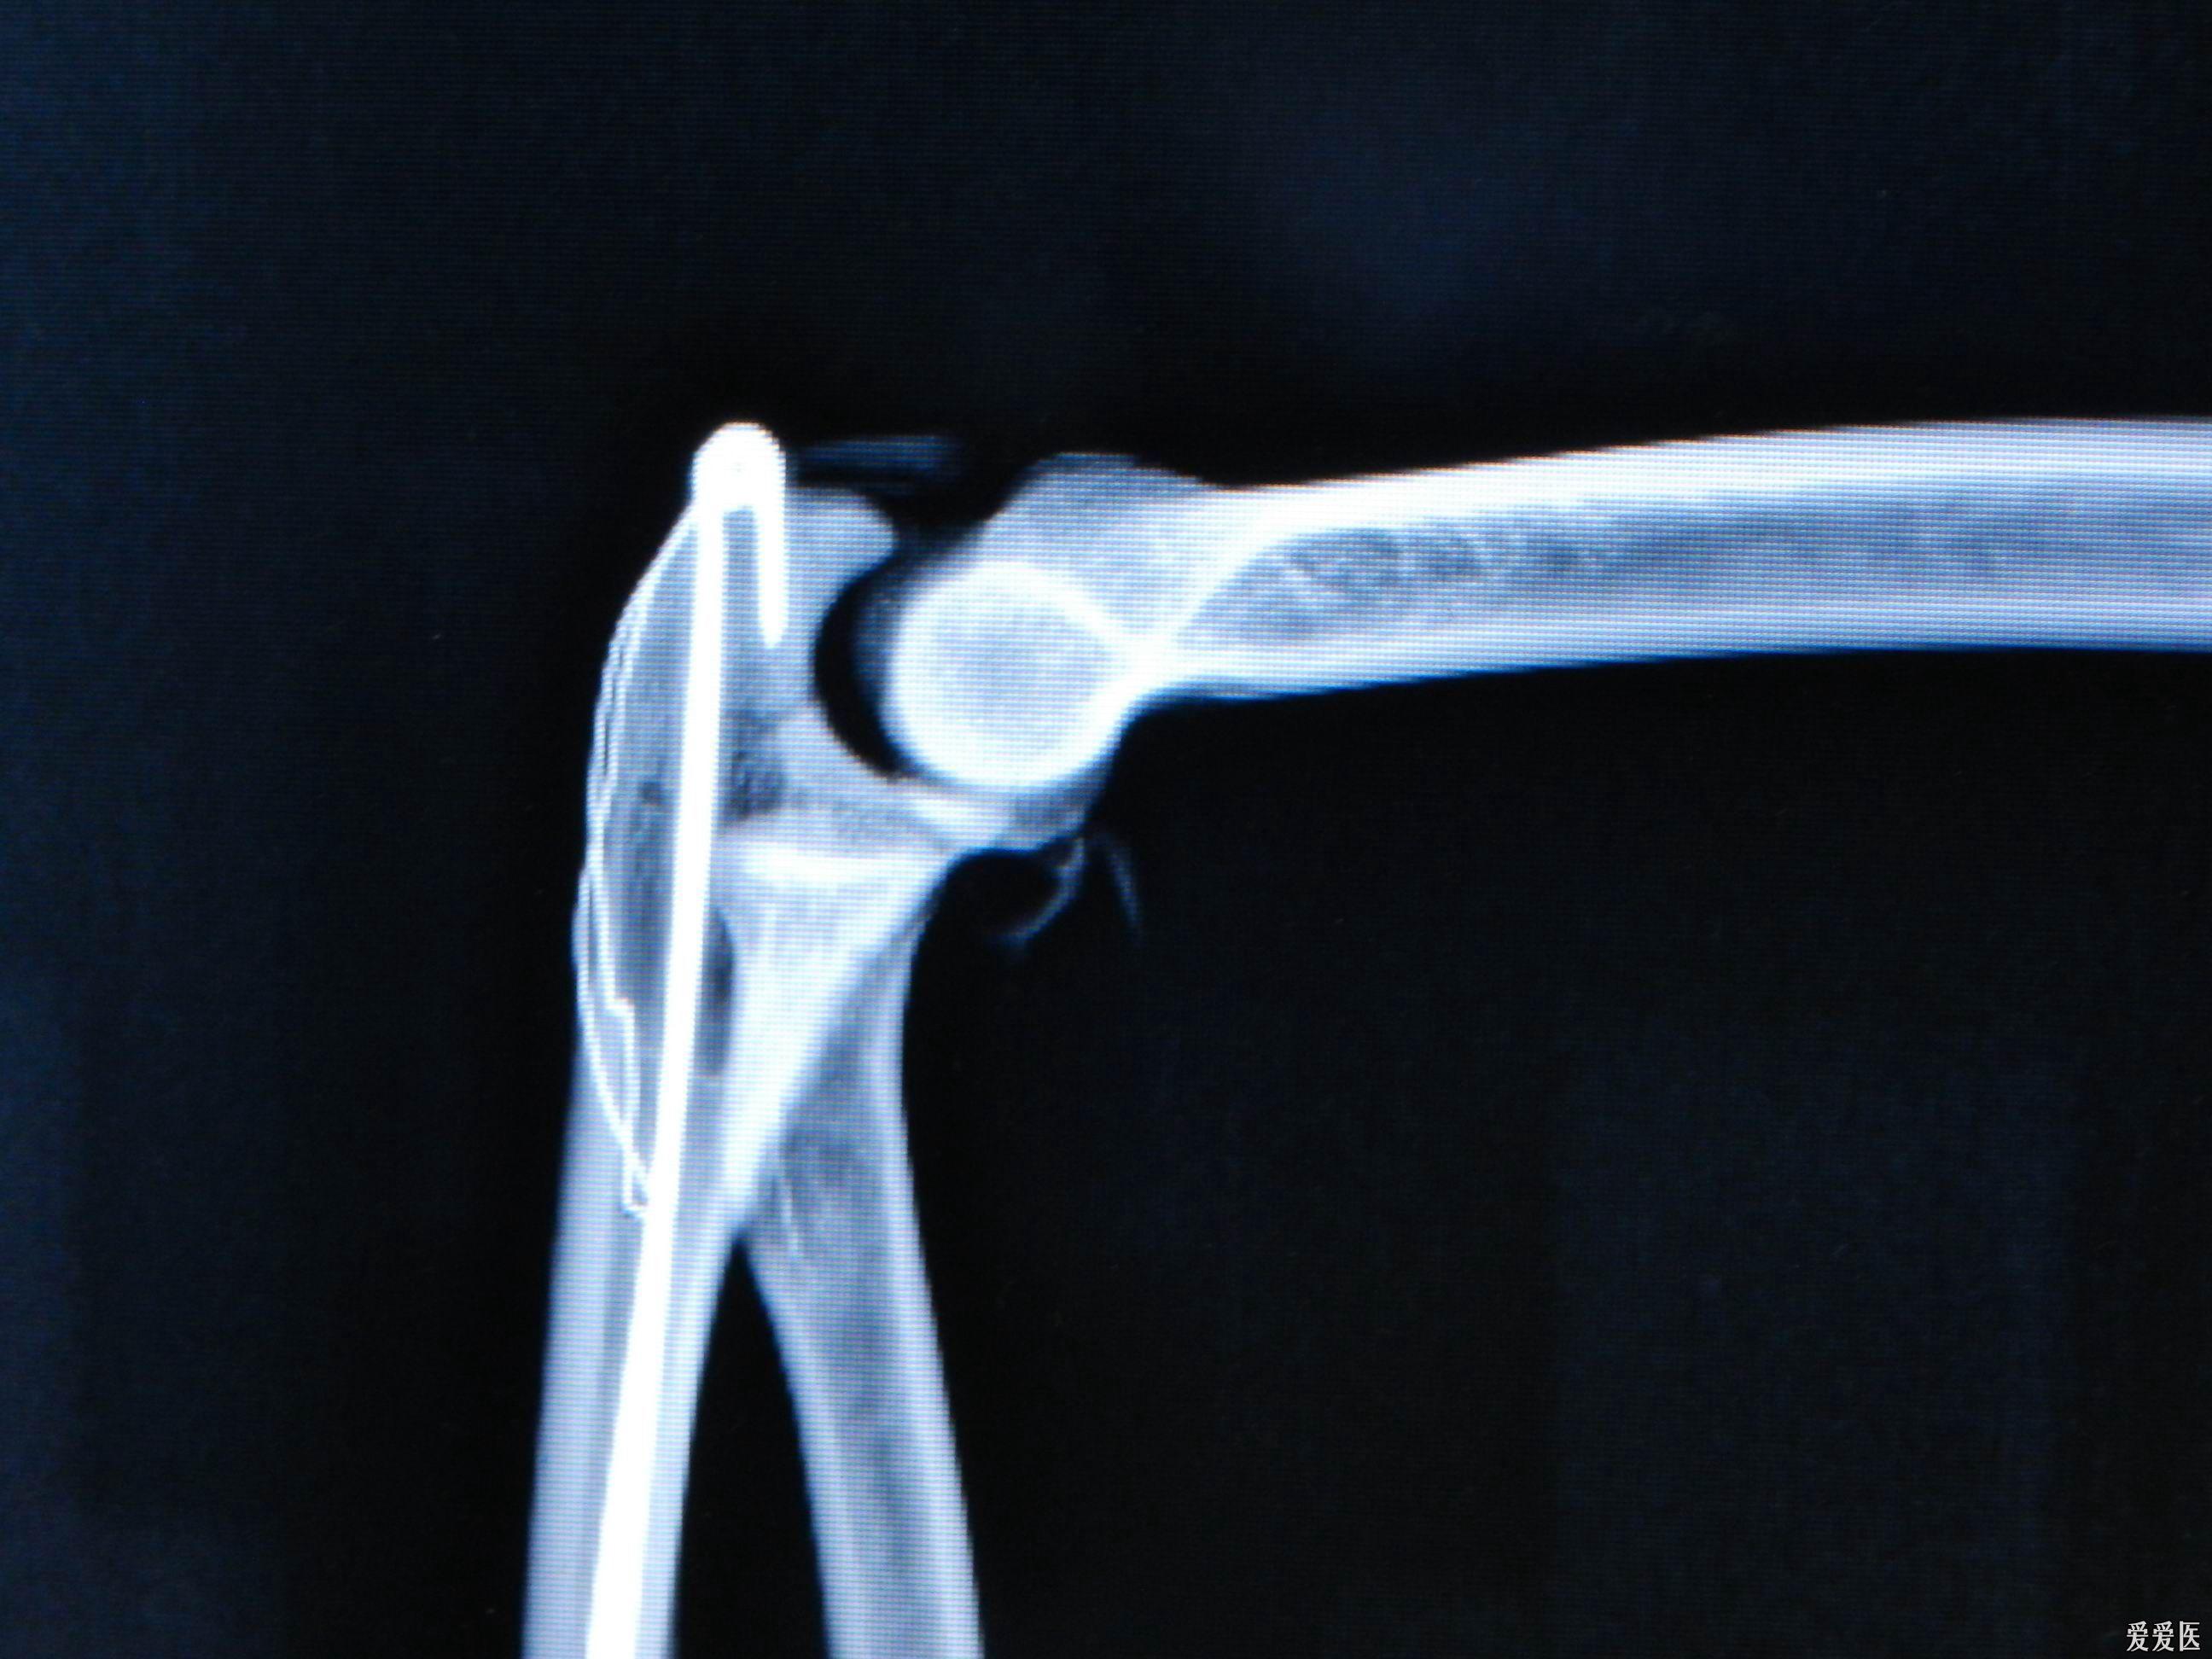 路过必看:新型专利,带孔钩的克氏针张力带治疗尺骨鹰嘴骨折